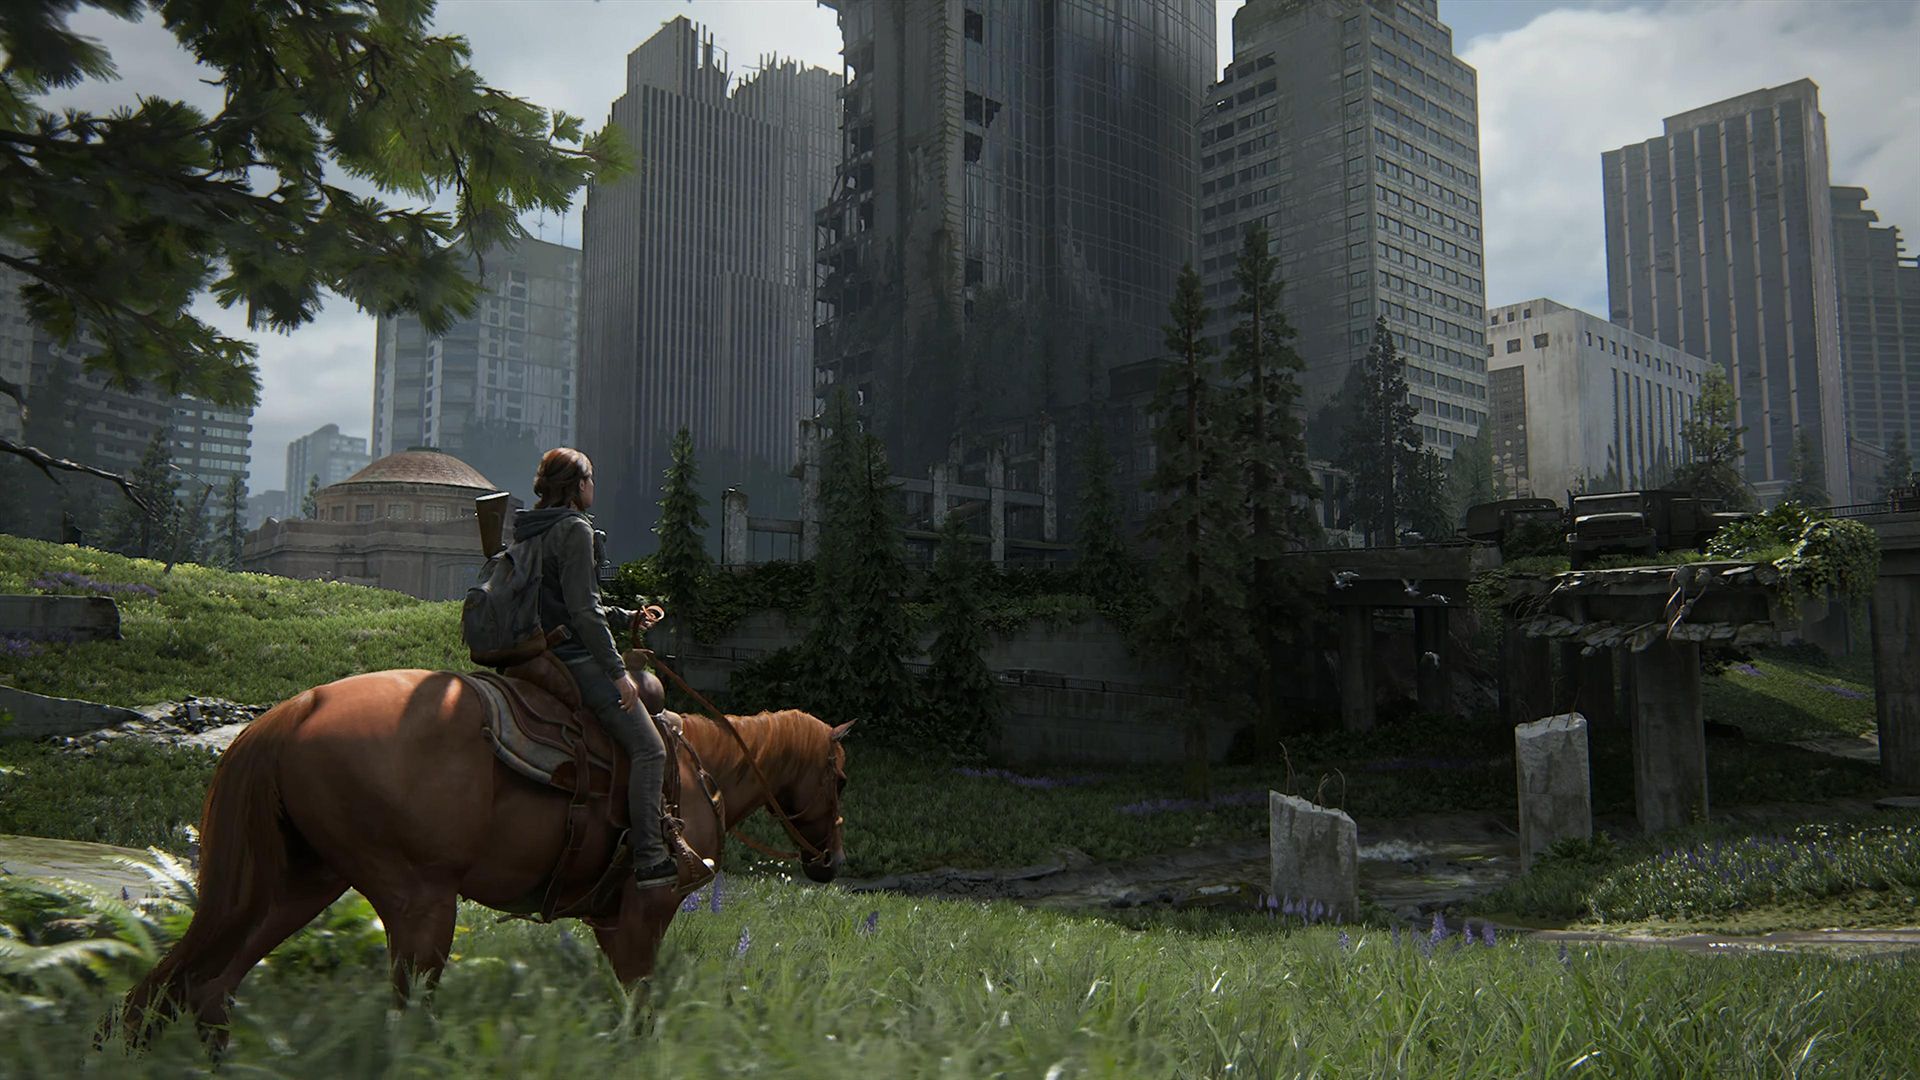 Cùng ngắm nhìn thế giới rộng mở sống động, nhưng đầy hiểm nguy trong đoạn gameplay The Last of Us Part II | ONE Esports Vietnam